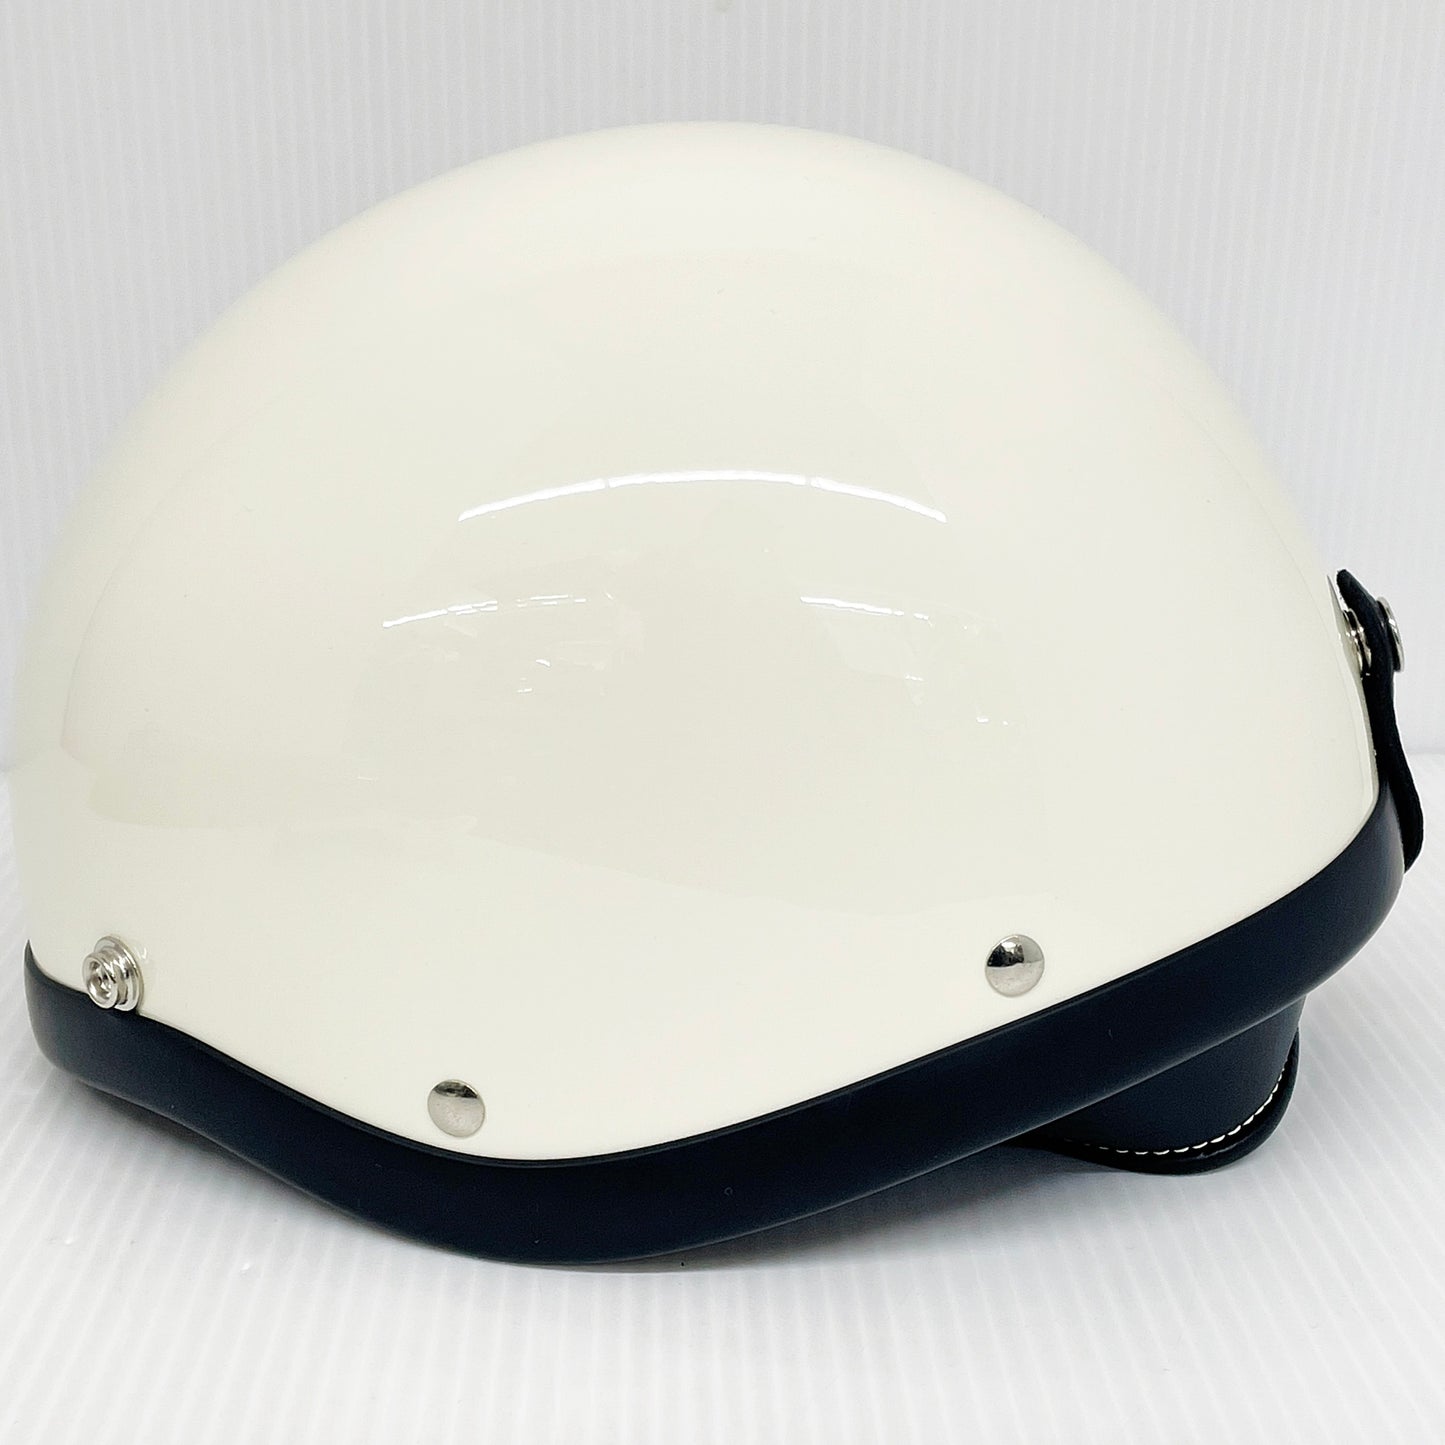 BORN FREE SHORTY ヘルメット アイボリーホワイト サイズM/L バイザー イヤーカバー 白黒チンカップ 収納袋付